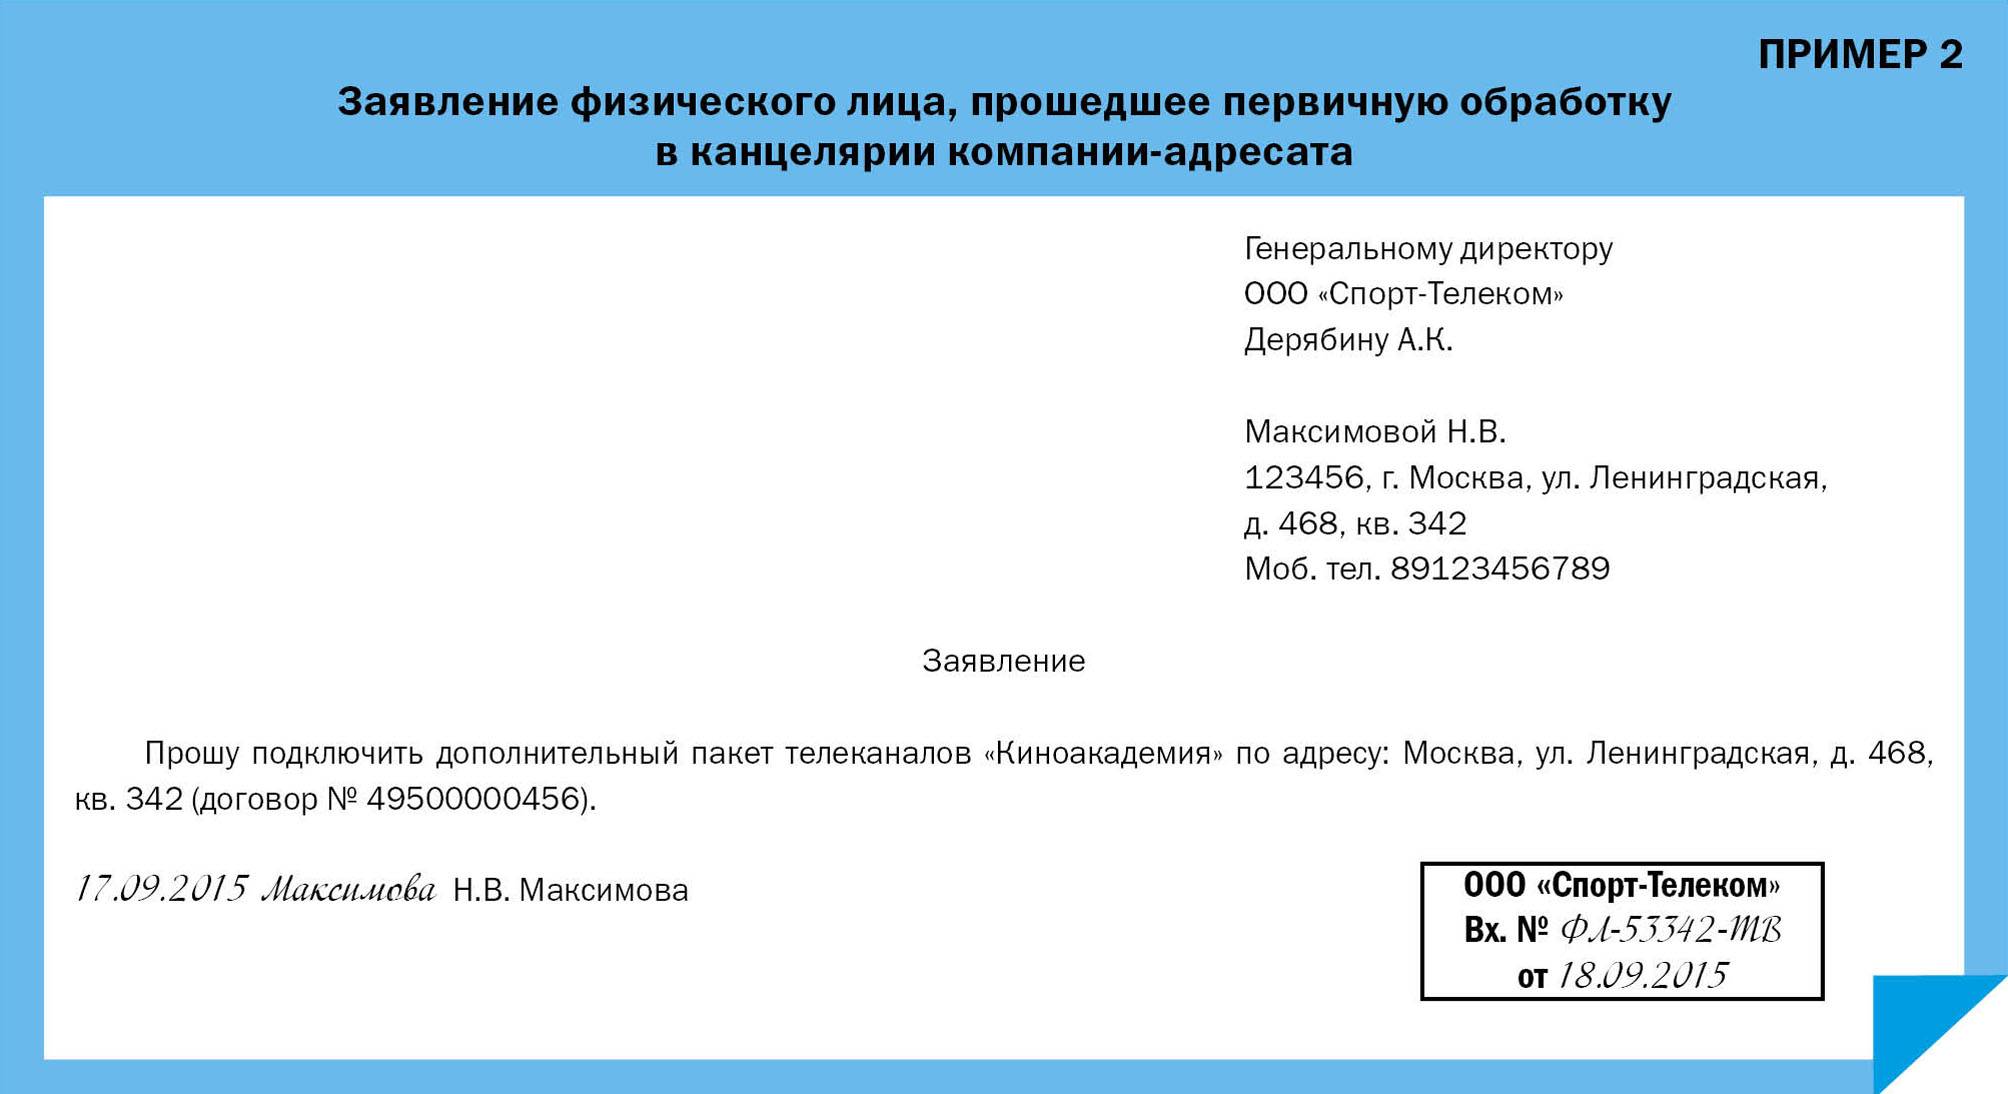 Заявление в свободной форме: нормы и требования, порядок составления и подачи, образец - fin-az.ru